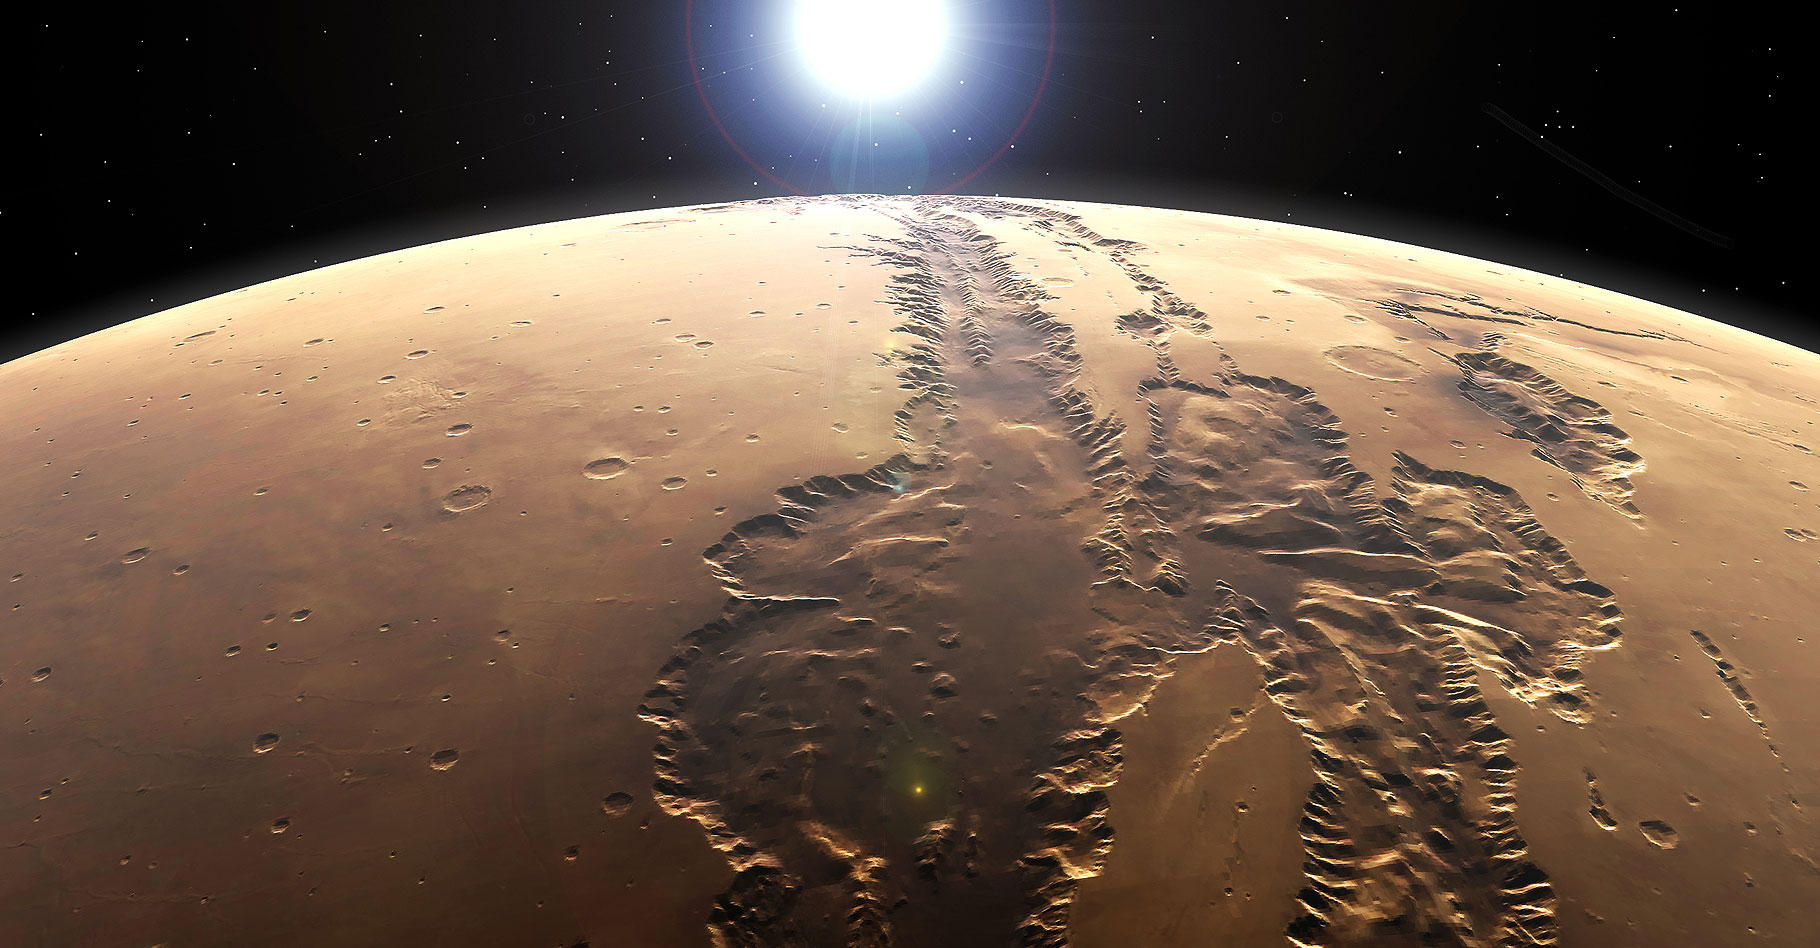 Valles Marineris. © Kevin Gill 6 CC BY-SA 2.0